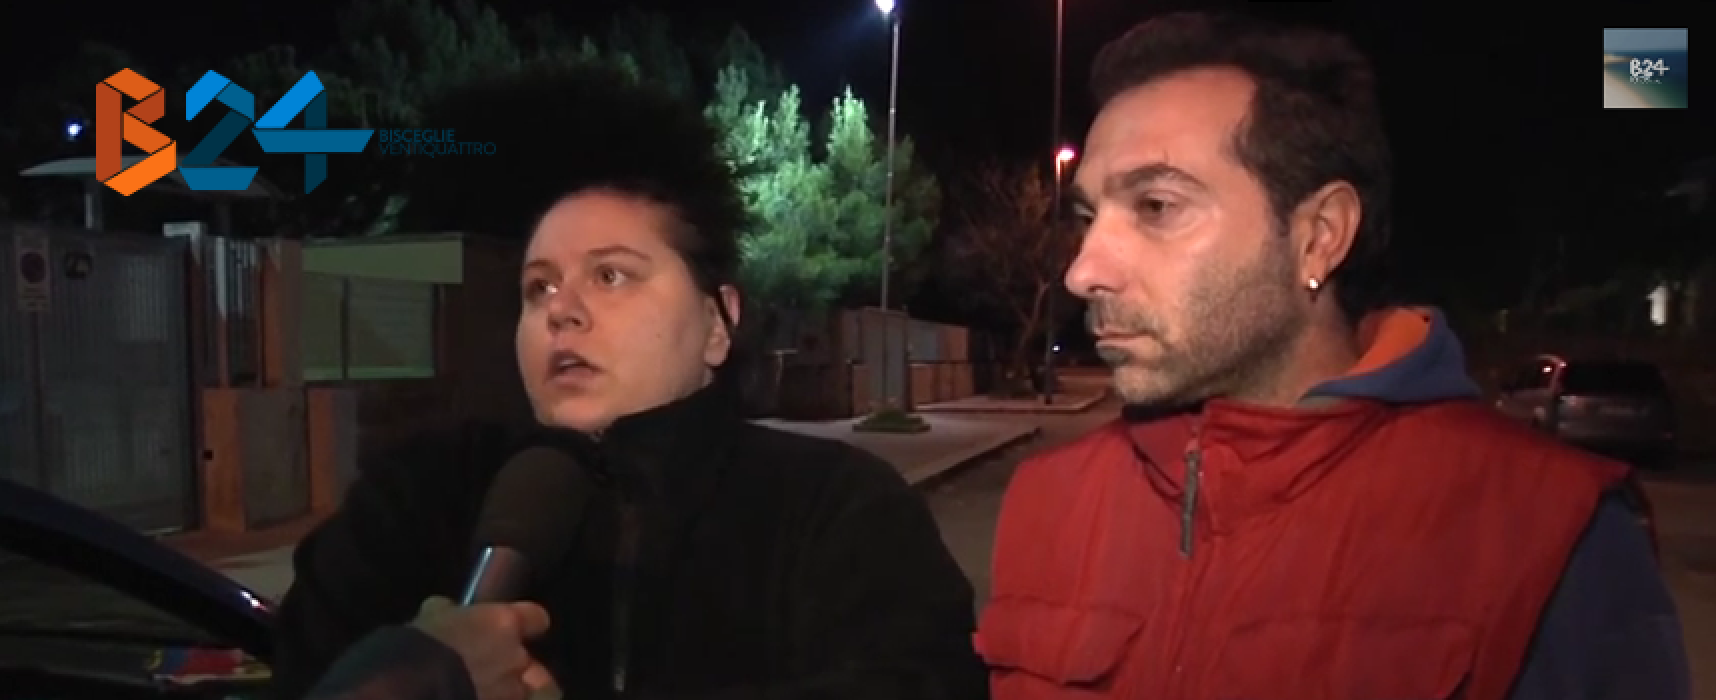 Emanuela e Giampiero, dopo la perdita del lavoro e lo sfratto, dormono in macchina / VIDEO